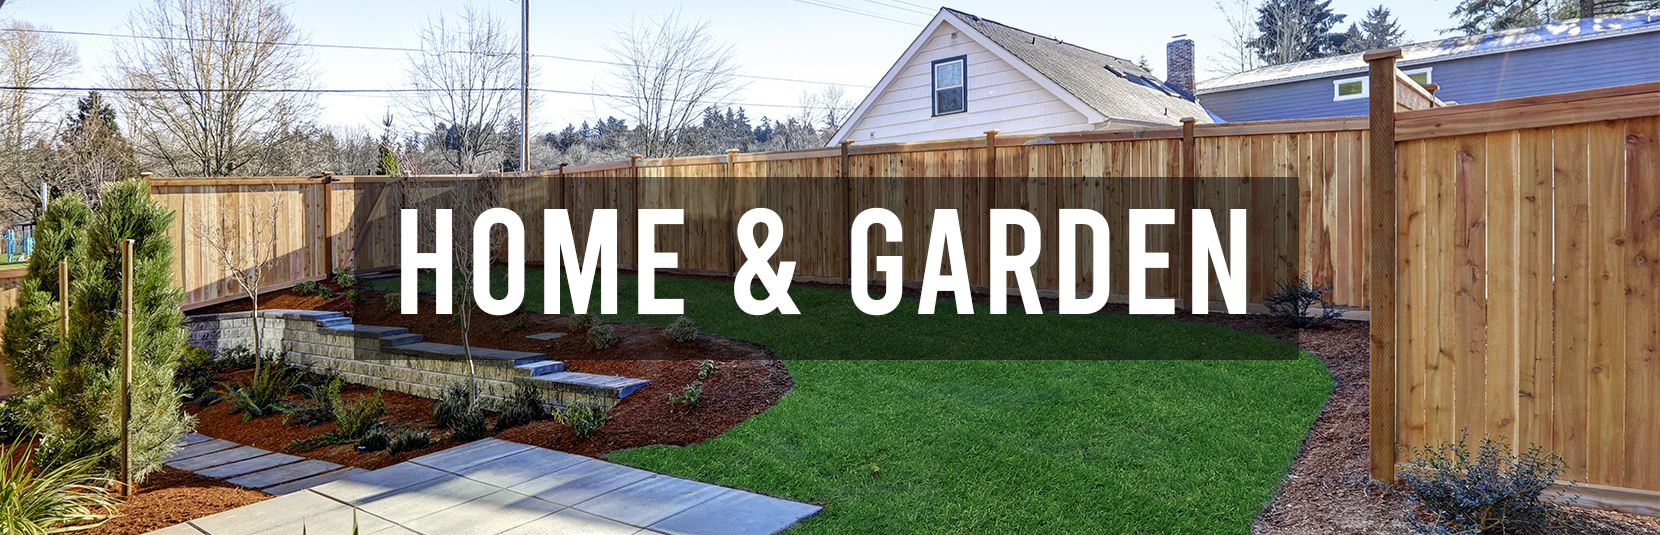 Home & Garden Banner